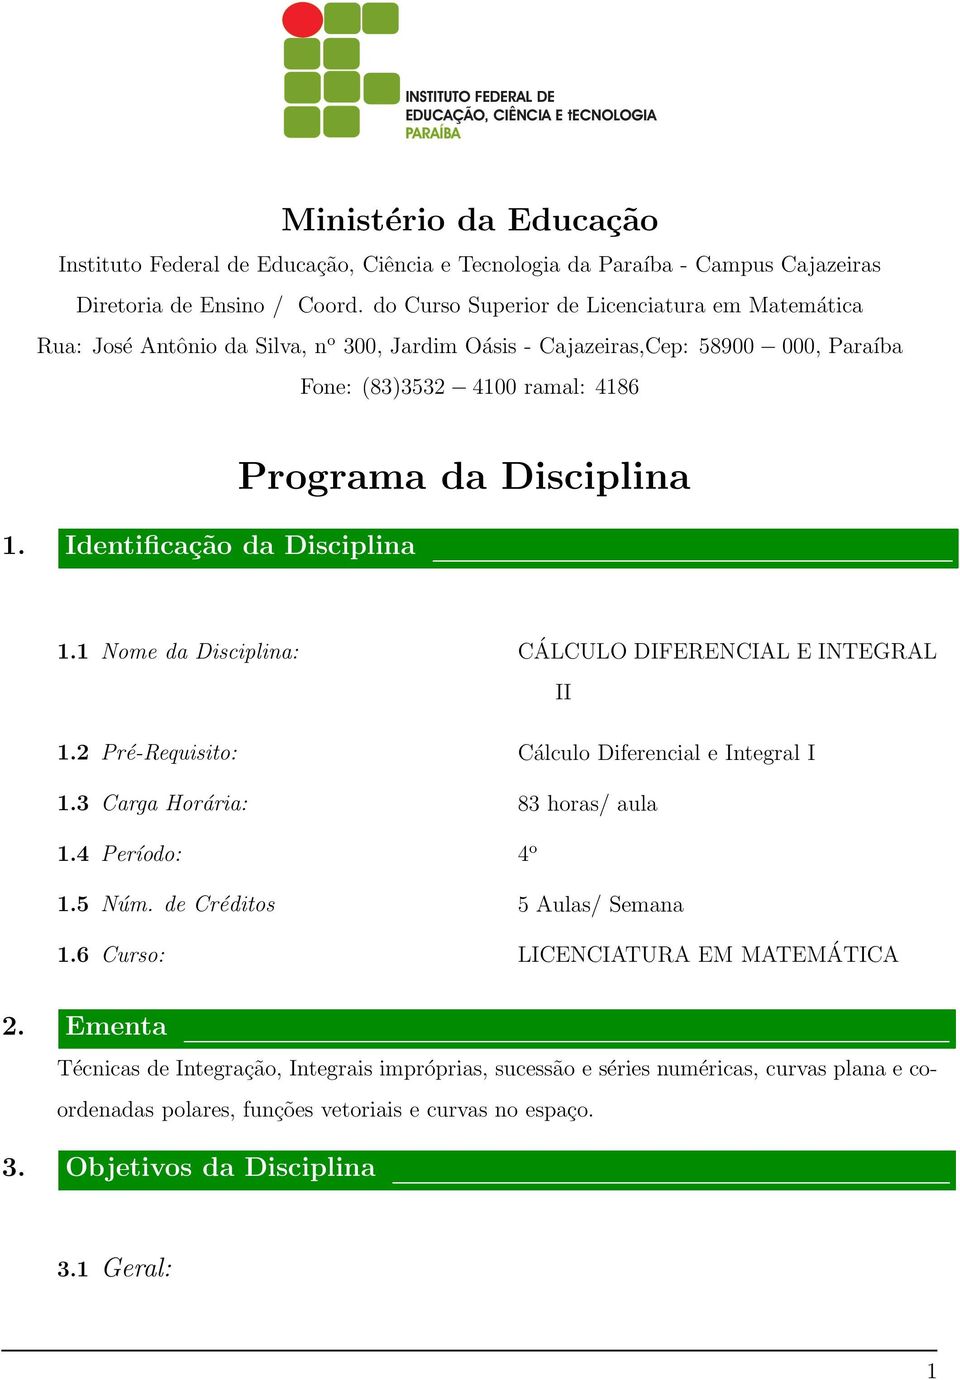 Identificação da Disciplina Programa da Disciplina 1.1 Nome da Disciplina: 1.2 Pré-Requisito: 1.3 Carga Horária: 1.4 Período: 1.5 Núm. de Créditos 1.